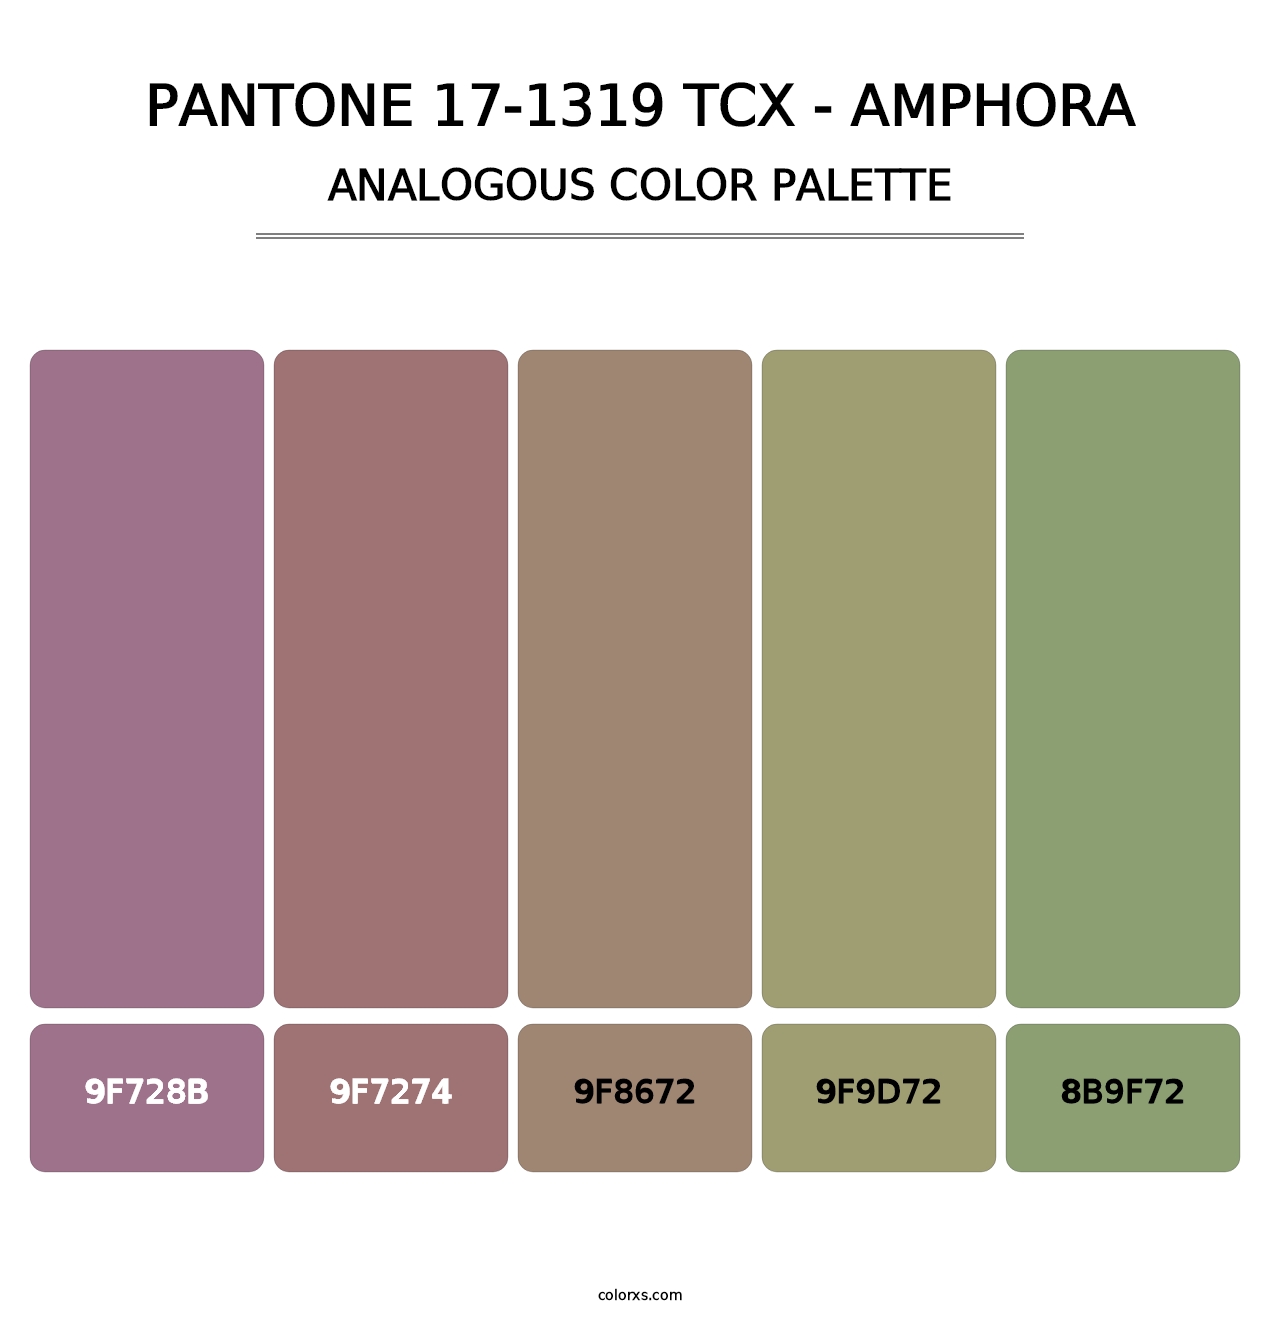 PANTONE 17-1319 TCX - Amphora - Analogous Color Palette